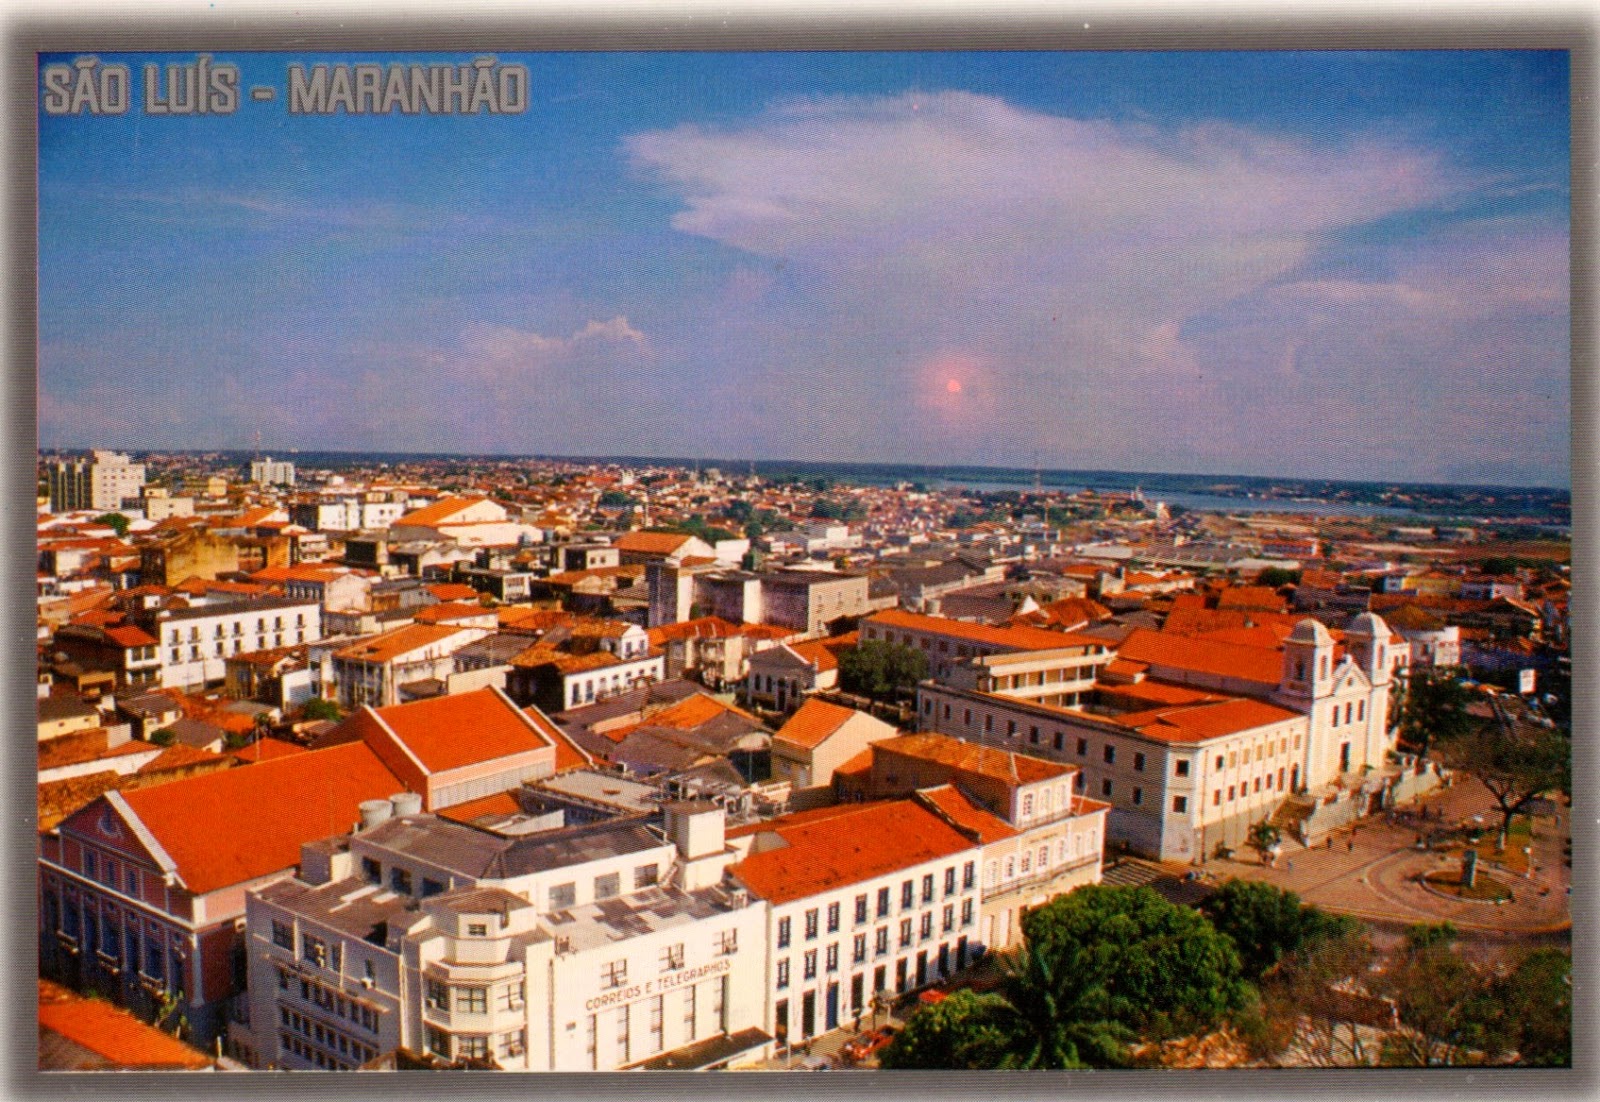 São Luís - Maranhão